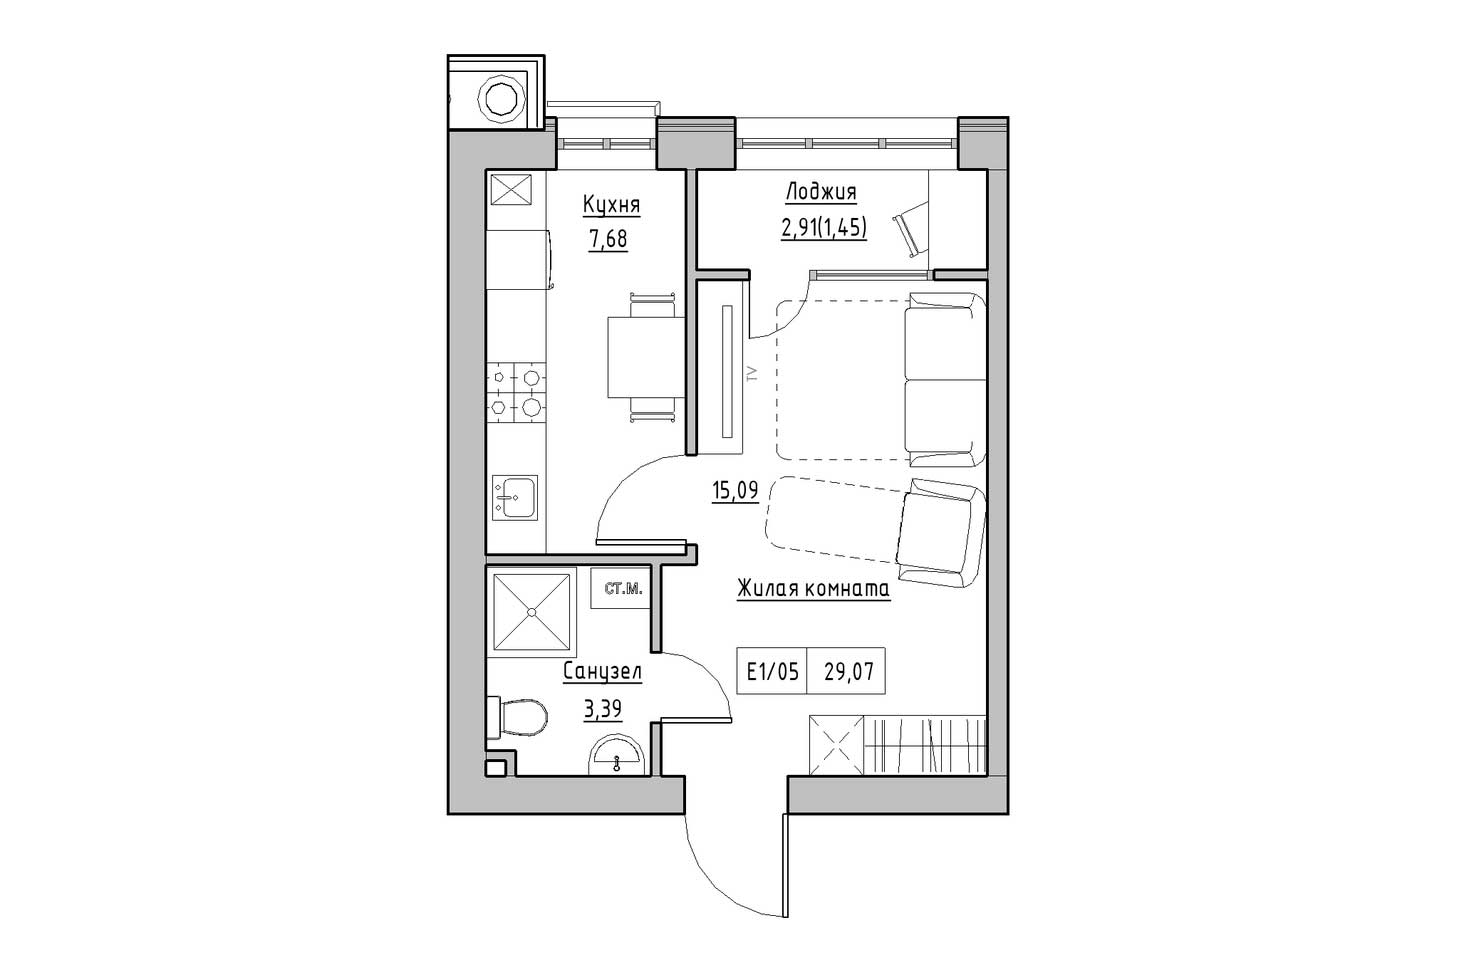 Планировка 1-к квартира площей 29.07м2, KS-009-03/0007.